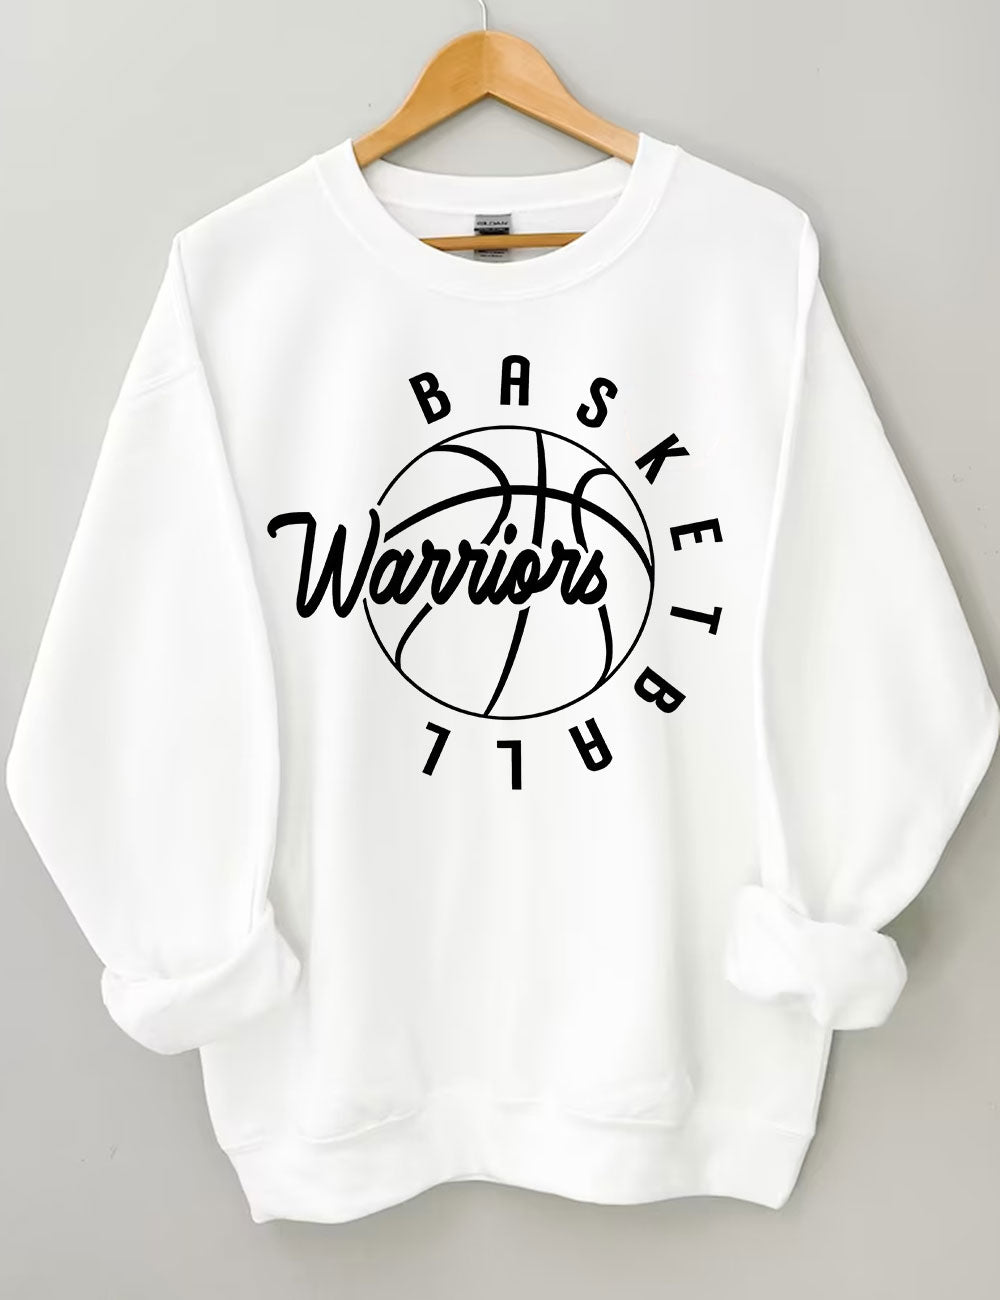 Warriors Basketball Sweatshirt